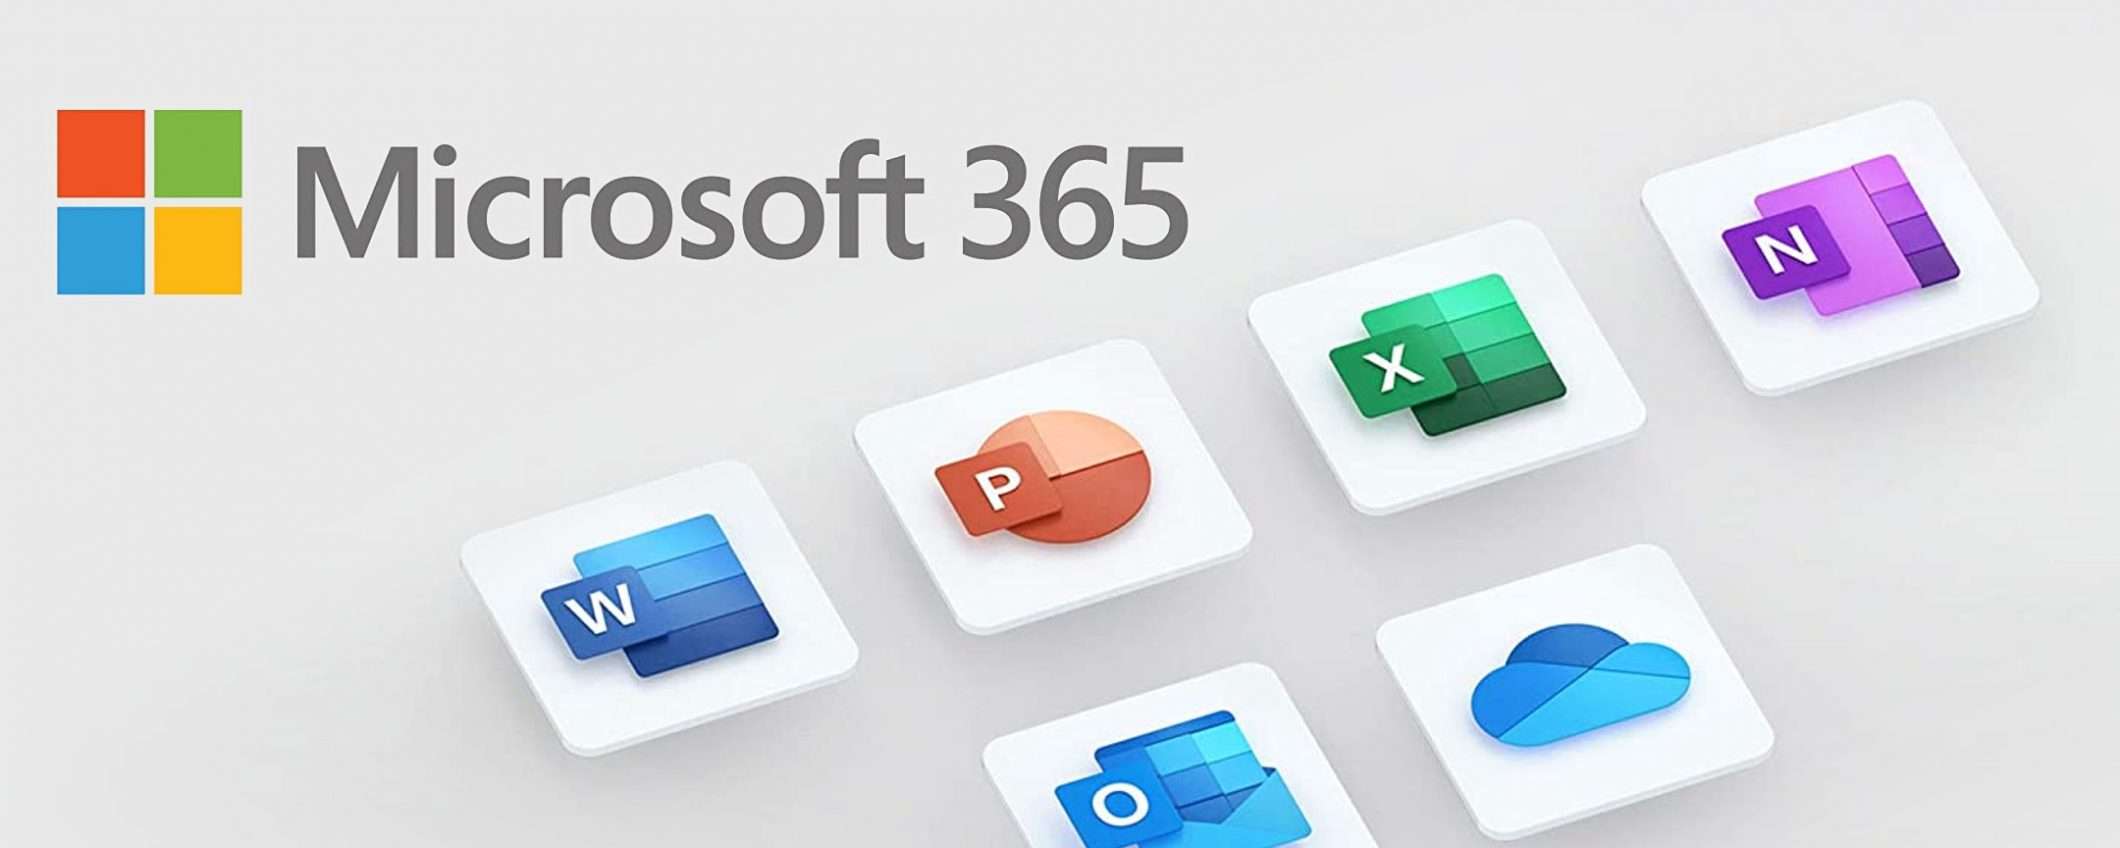 Microsoft 365, offerta bomba per tutta la famiglia